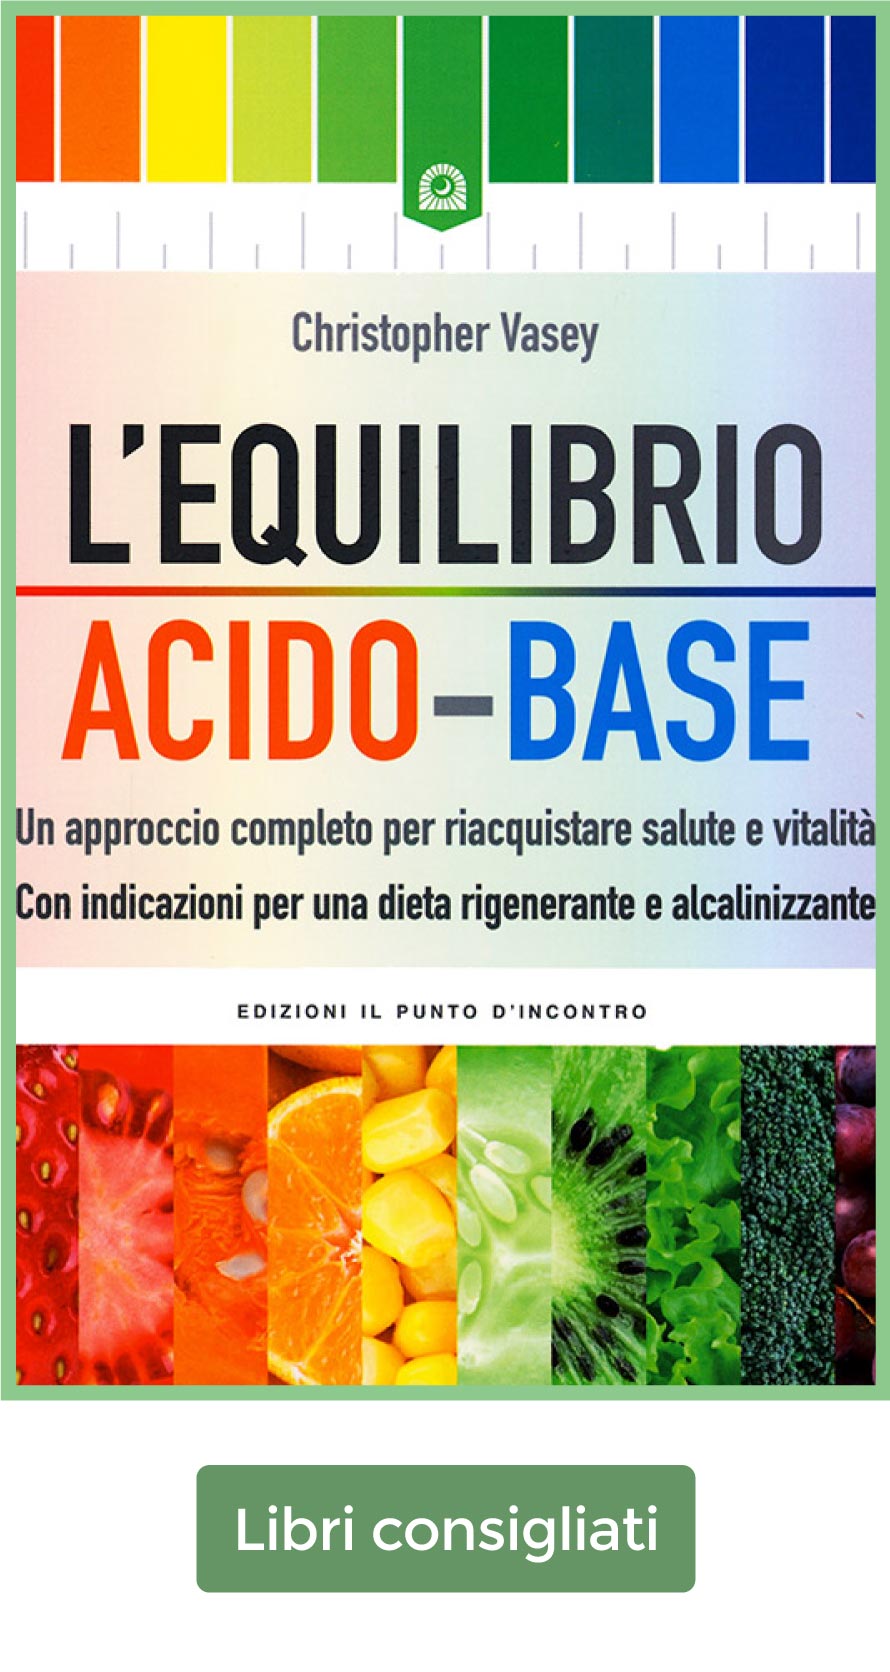 Equilibrio acido base, un libro da leggere per approfondire